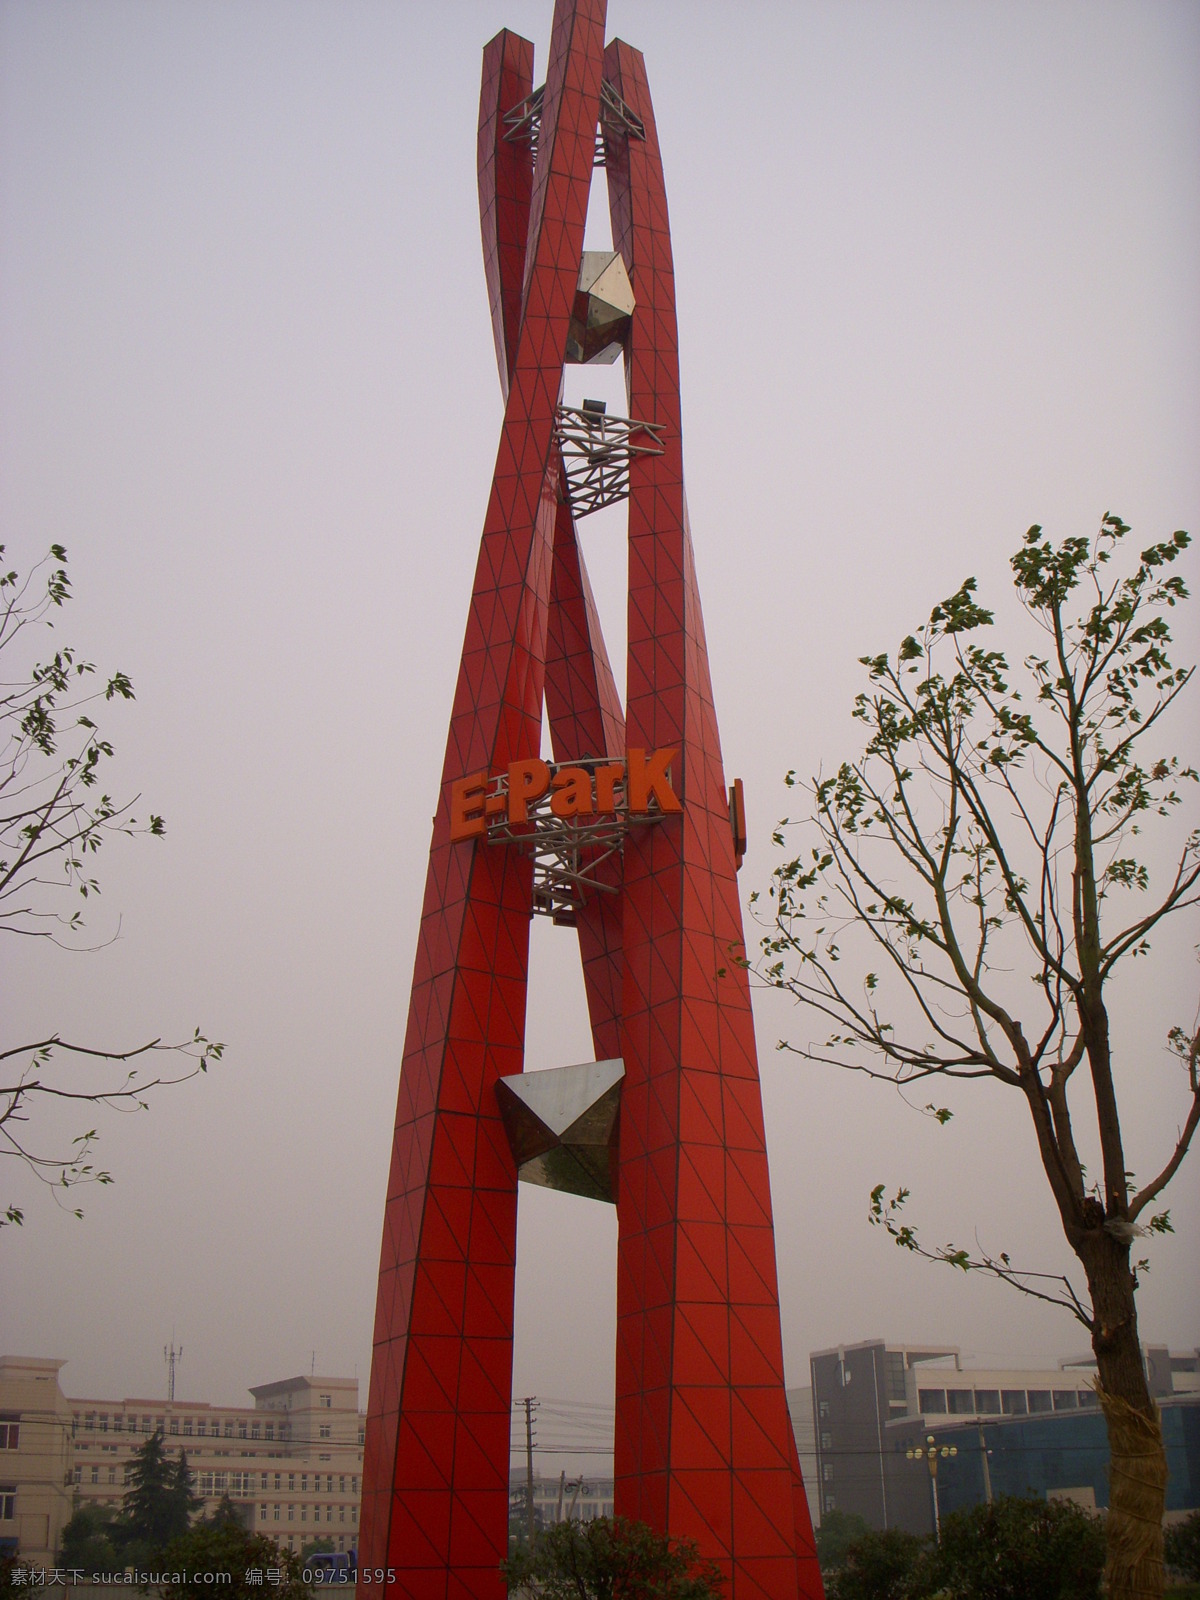 雕塑 红色雕塑 无锡 大学区 红色 旅游摄影 国内旅游